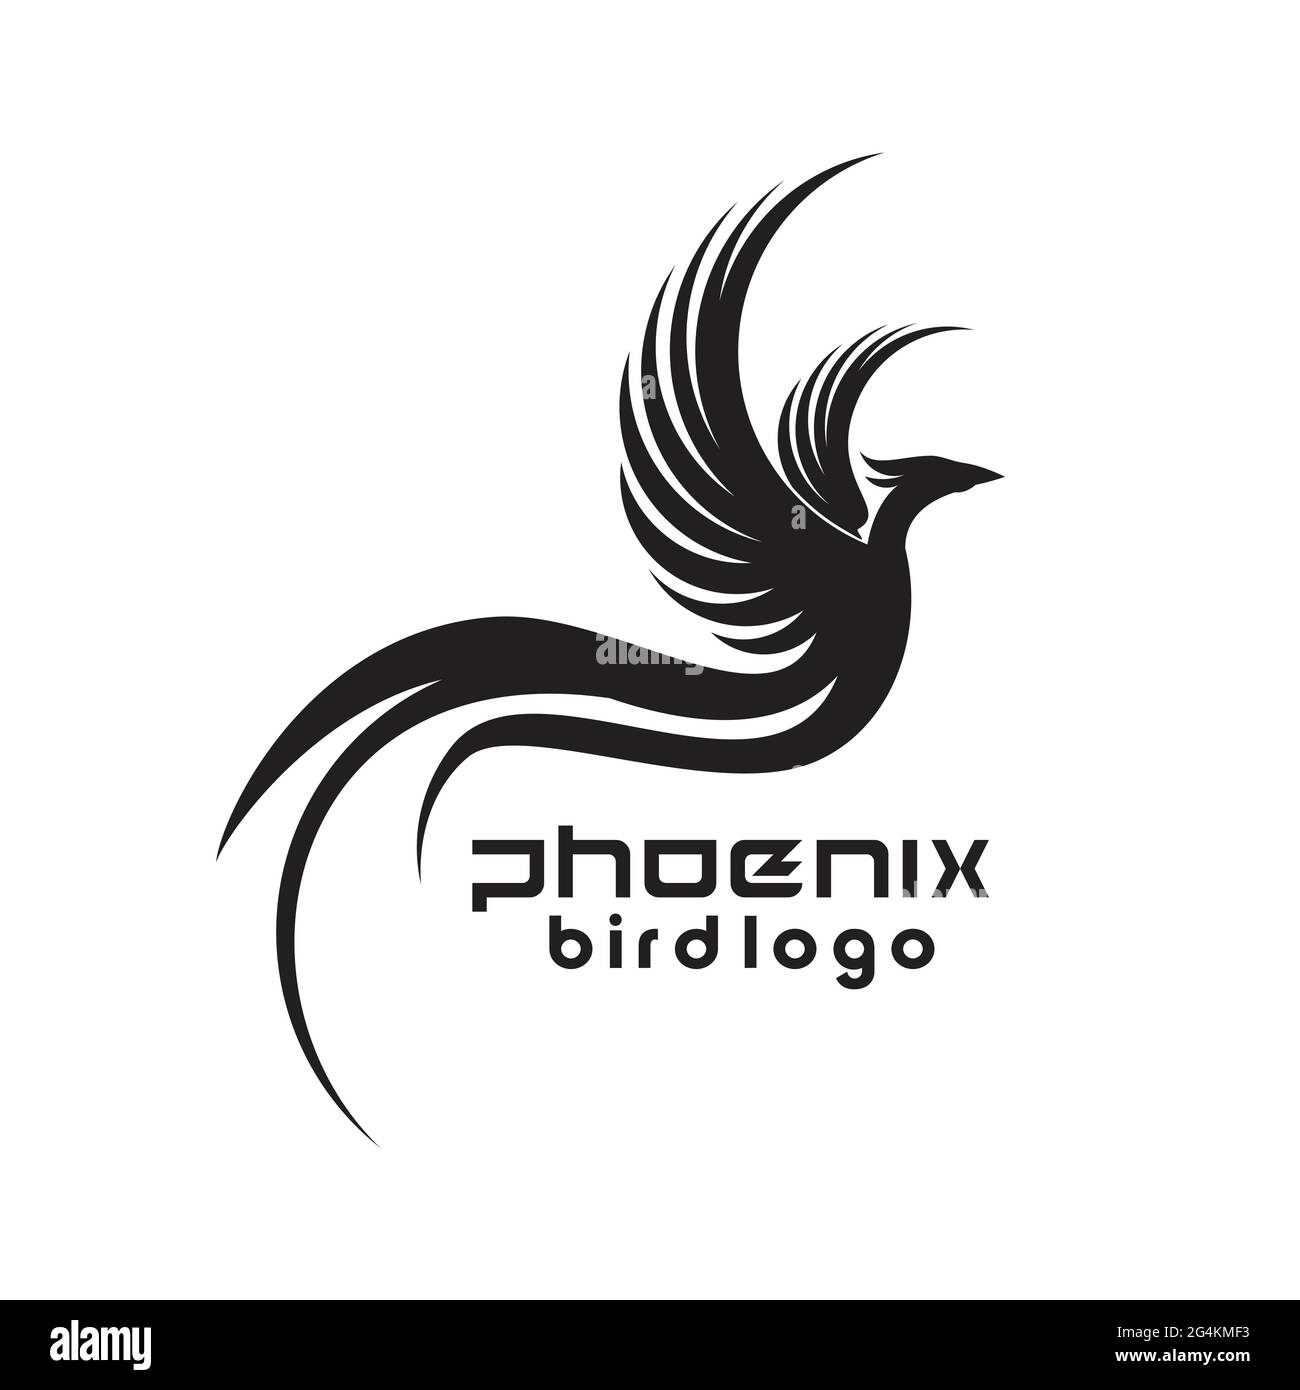 phoenix bird logo exclusive design inspiration Stock Vector